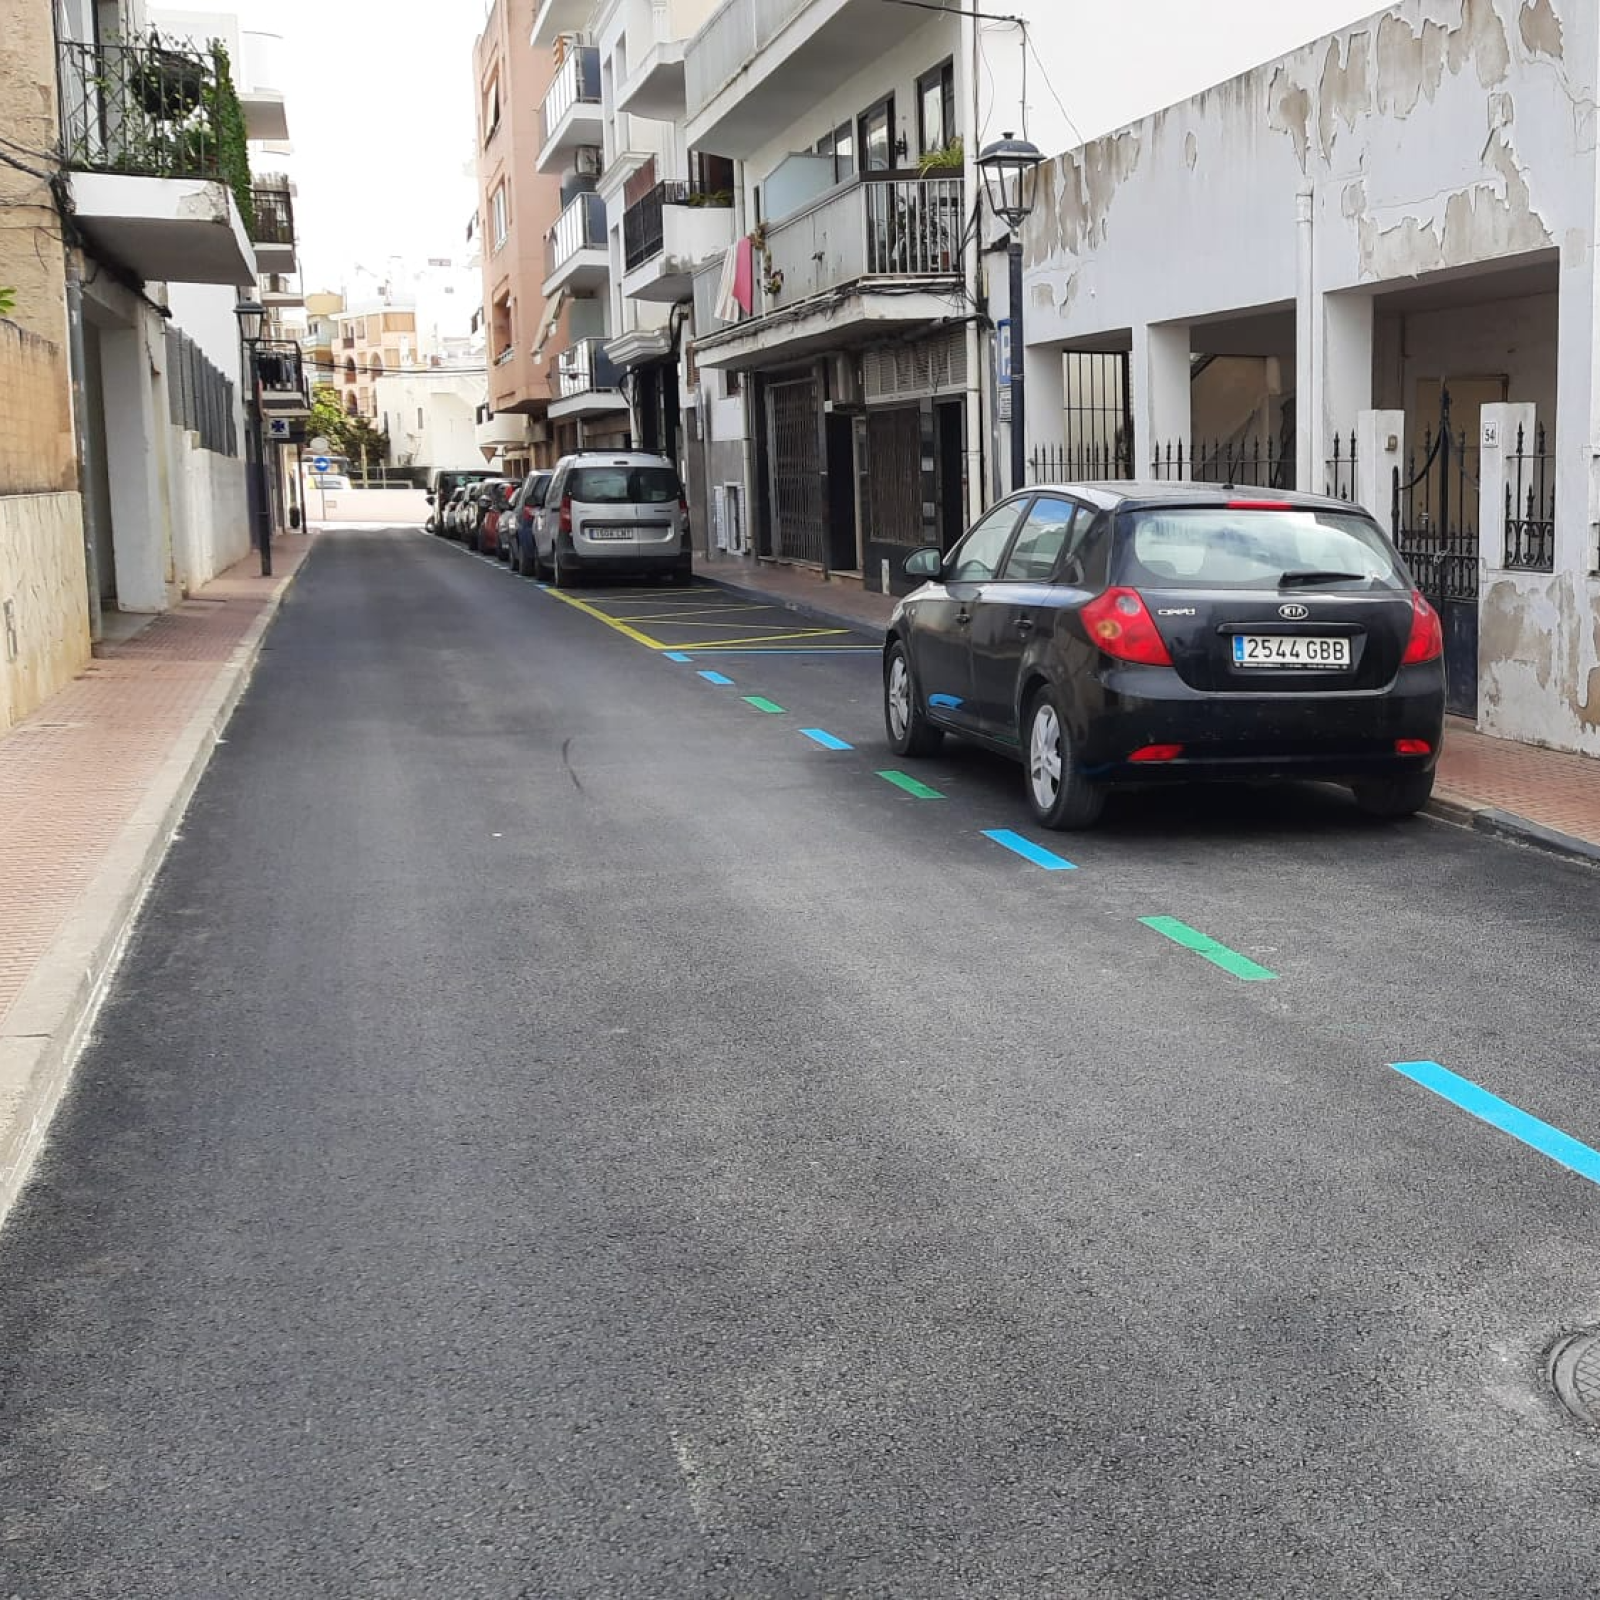 El Ayuntamiento inicia la segunda fase del asfaltado de calles del núcleo de Santa Eulària el próximo lunes 8 de enero